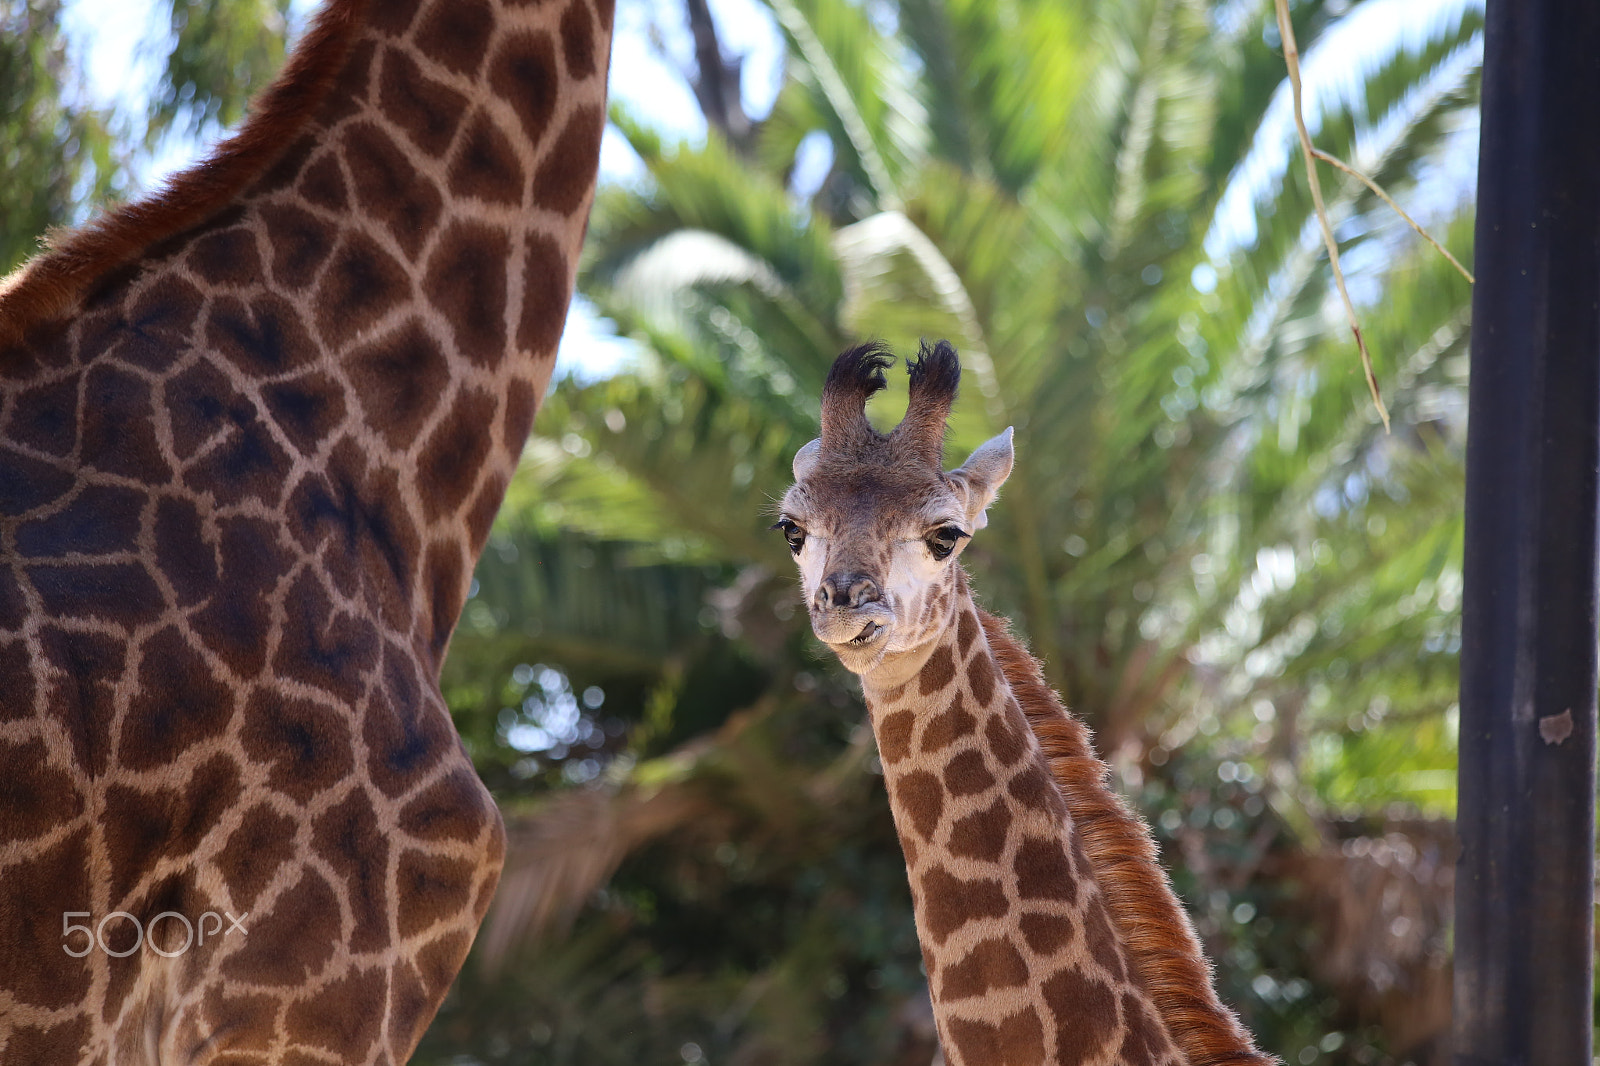 Canon EOS 6D sample photo. Lovely giraffe calf photography